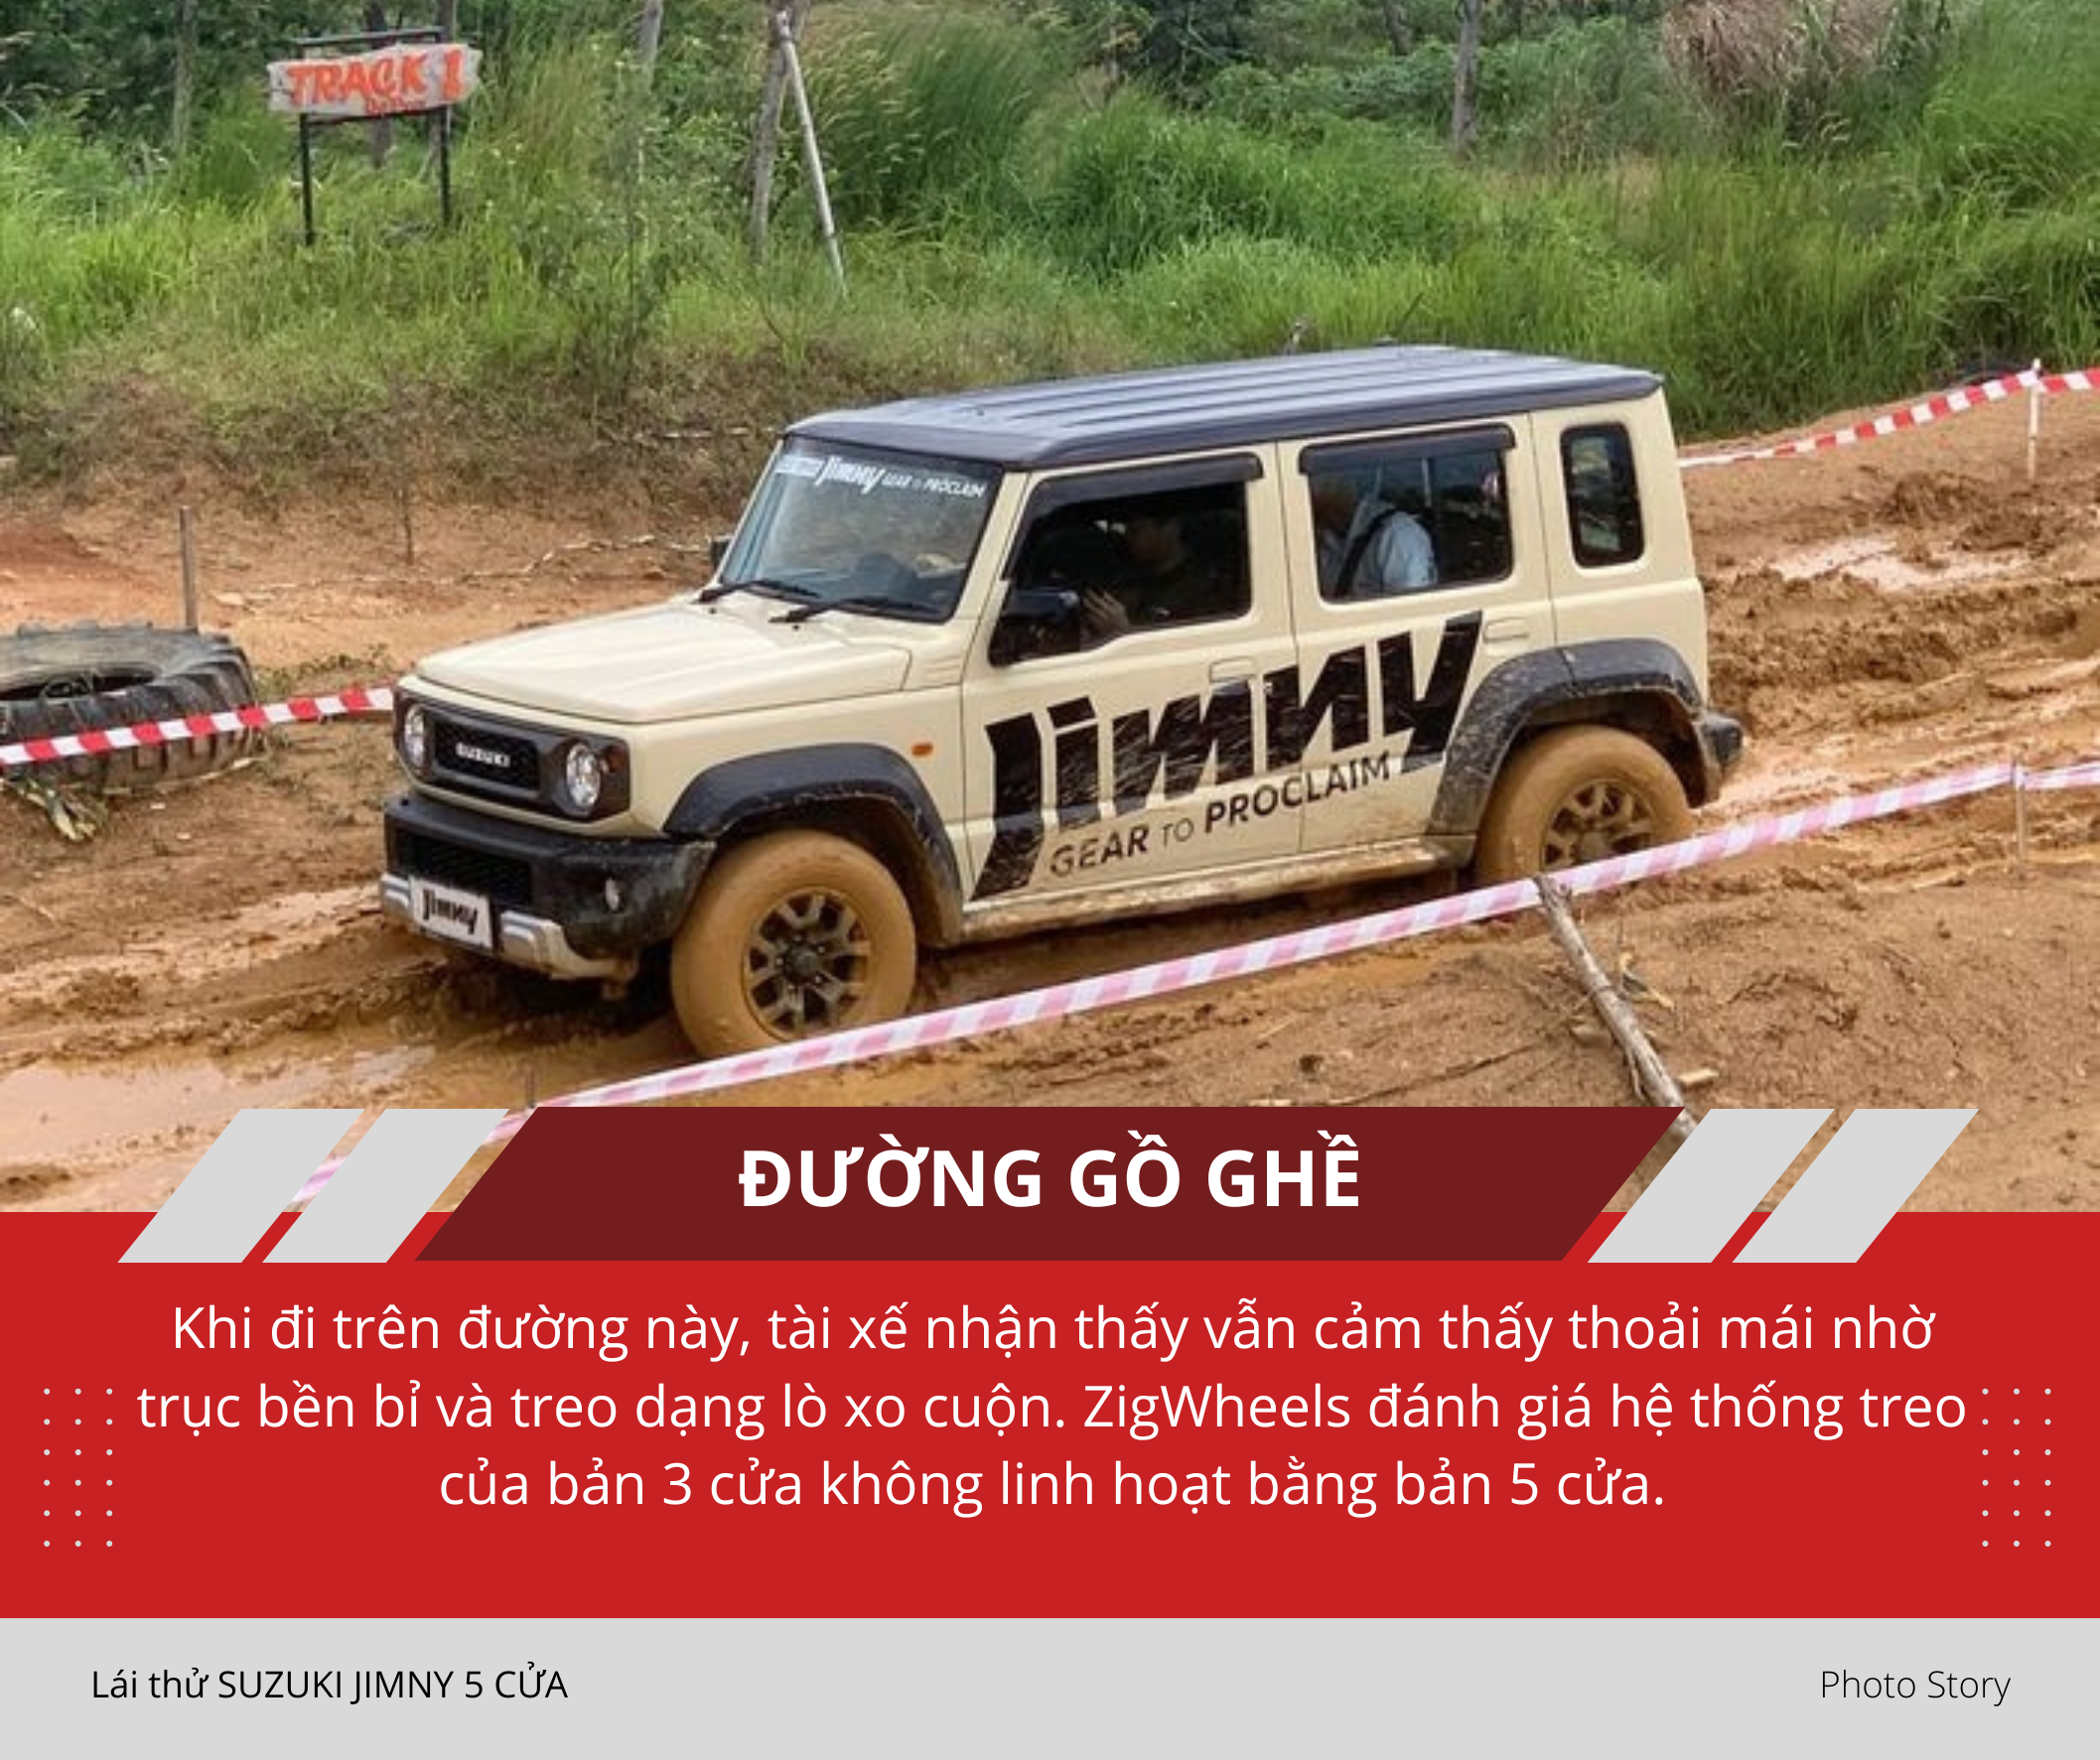 Mang Suzuki Jimny 5 cửa vào rừng 'hành hạ': Nhiều điểm hơn hẳn bản 3 cửa sắp ra mắt Việt Nam, thoải mái cho cả nhà cùng off-road - Ảnh 9.